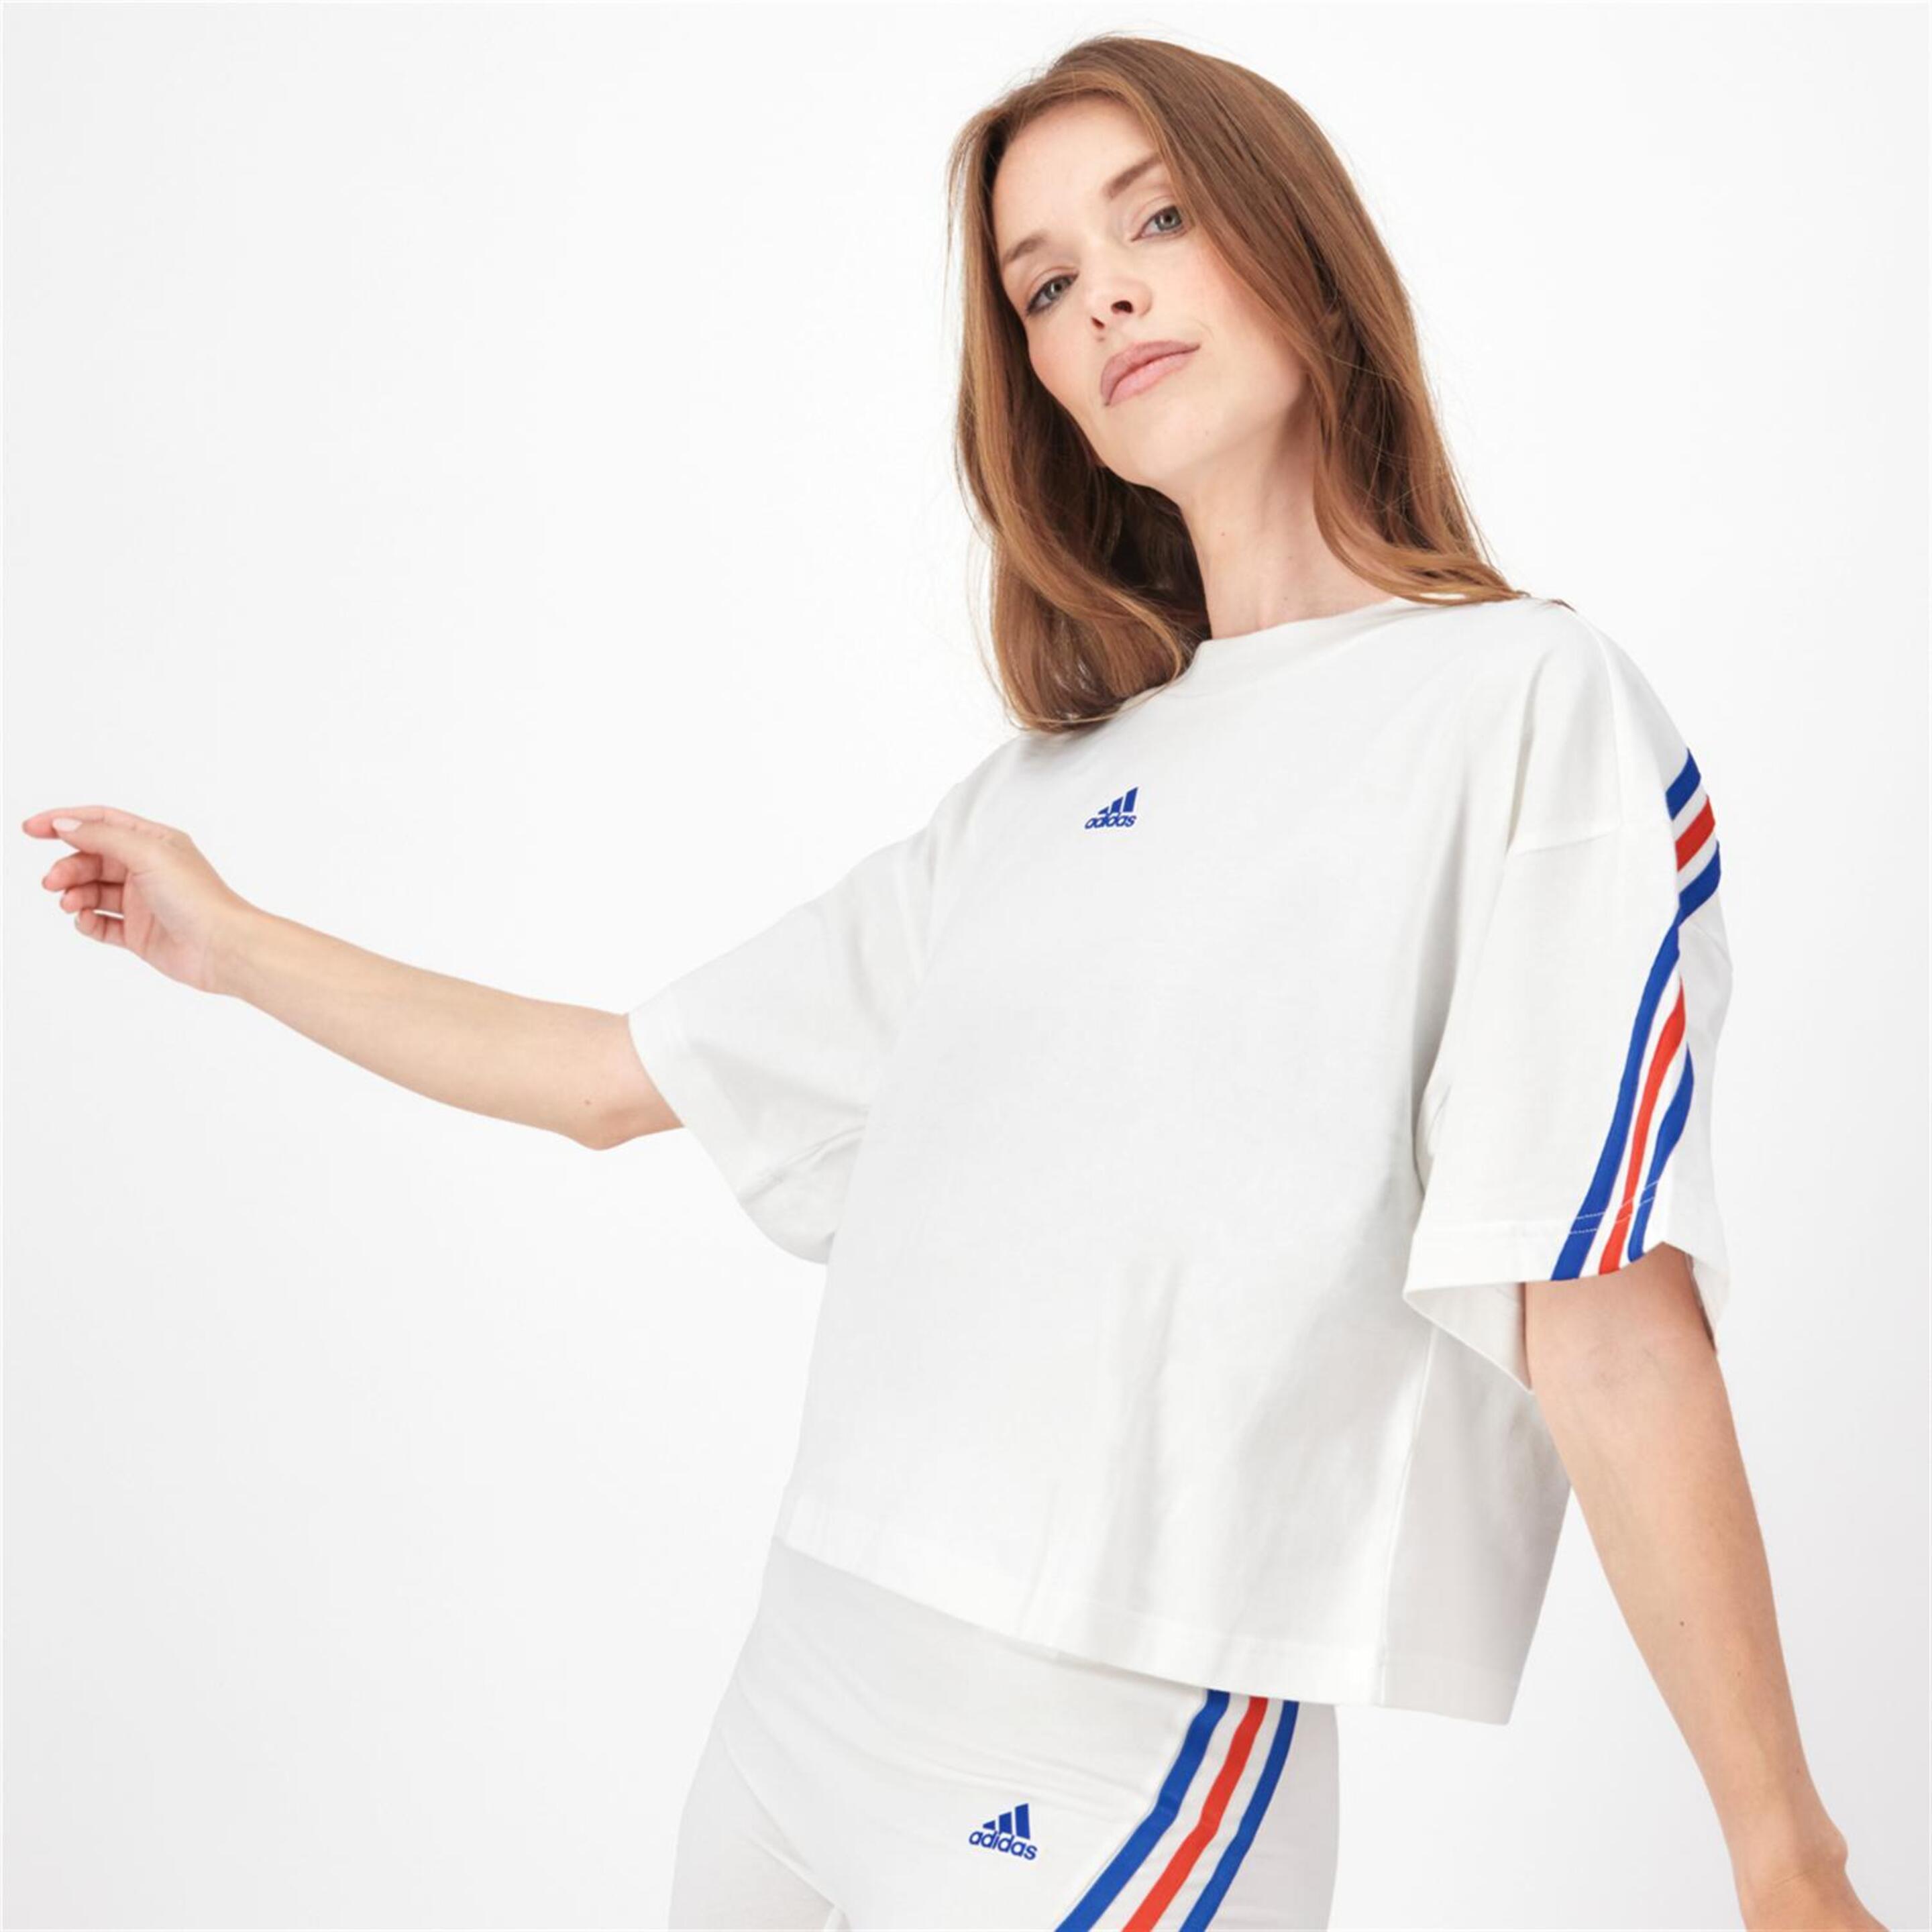 adidas 3 Stripes - Blanco - Camiseta Mujer